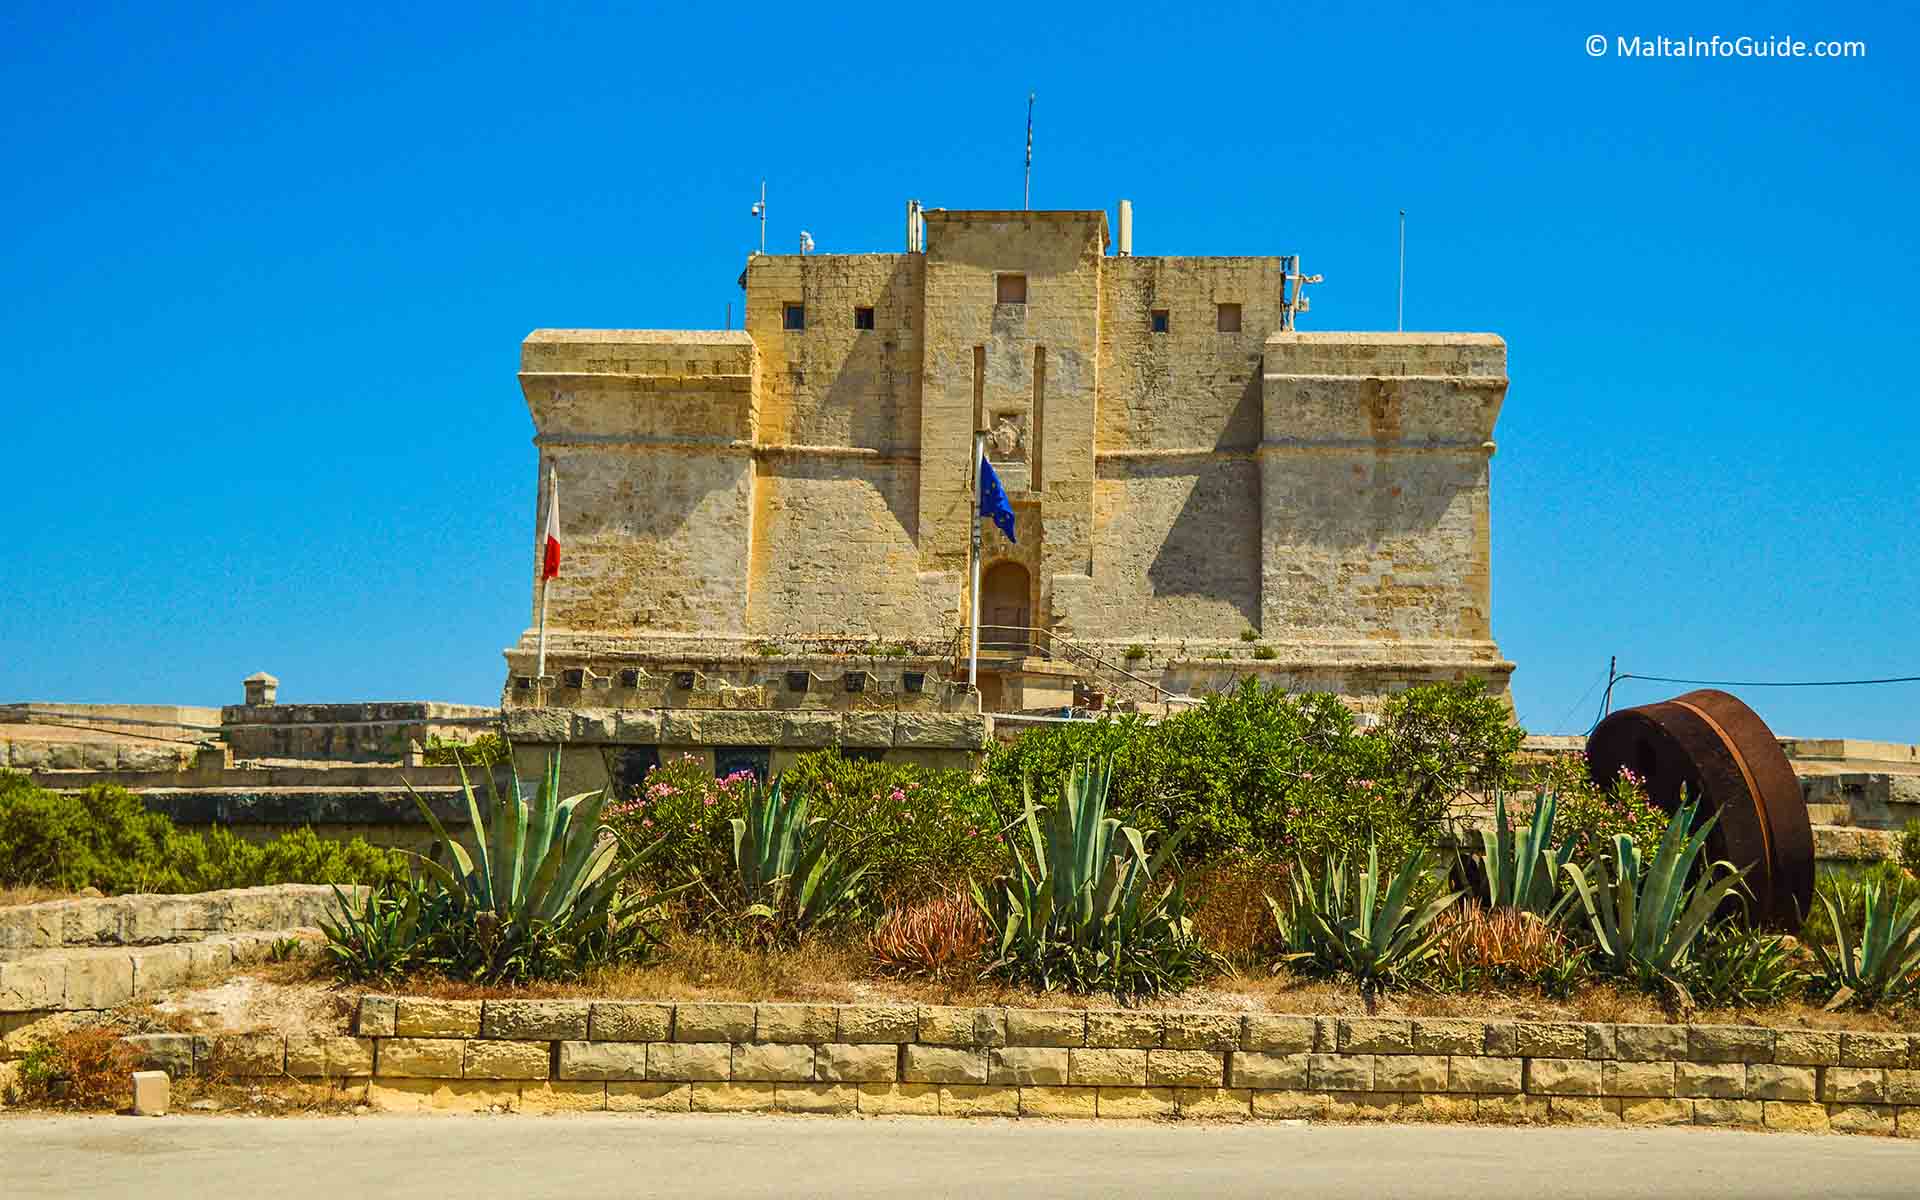 St. Lucian tower at Marsaxlokk village Malta.